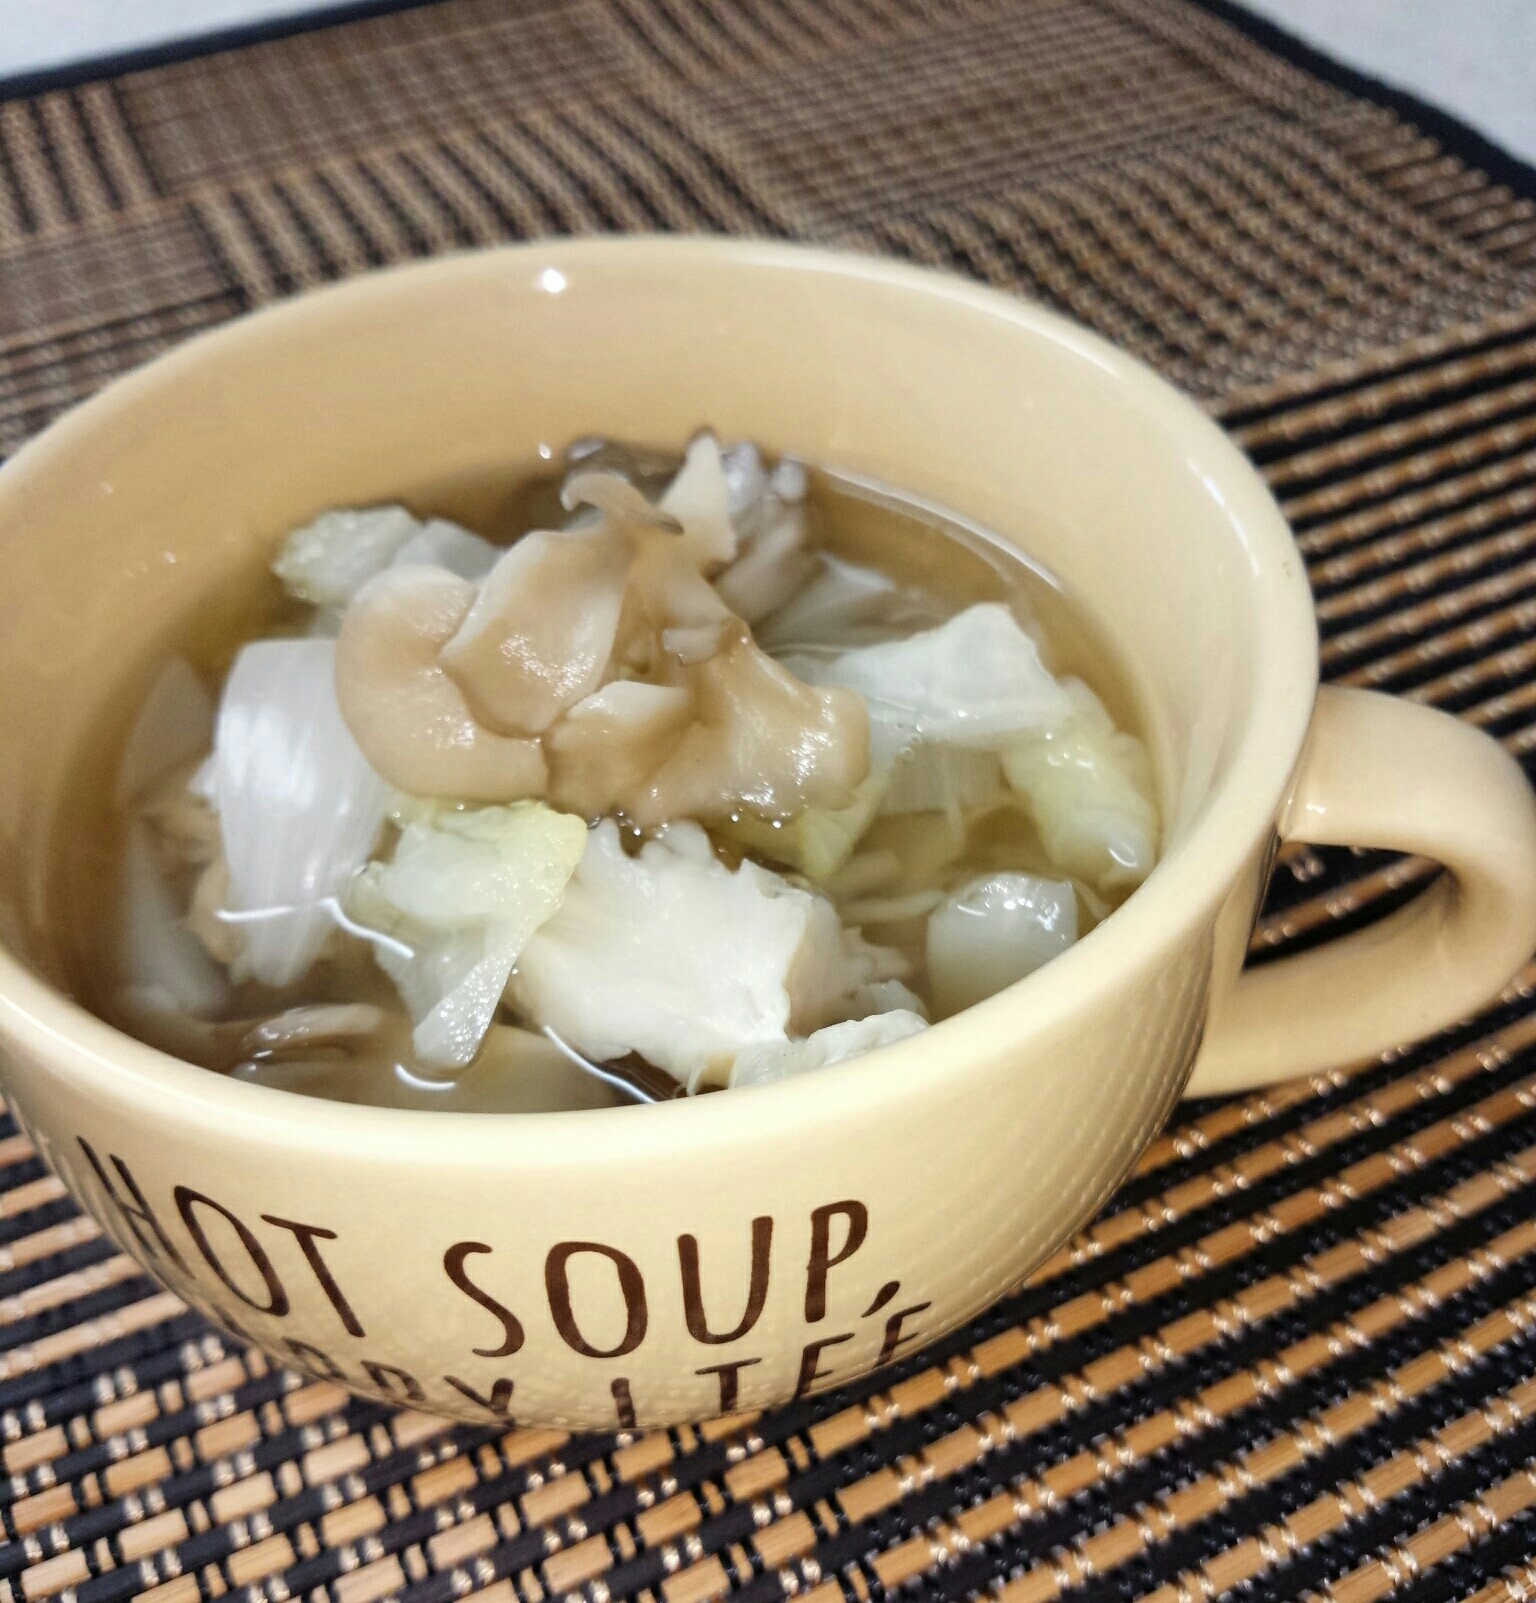 舞茸・キャベツ・玉葱のスープ♡